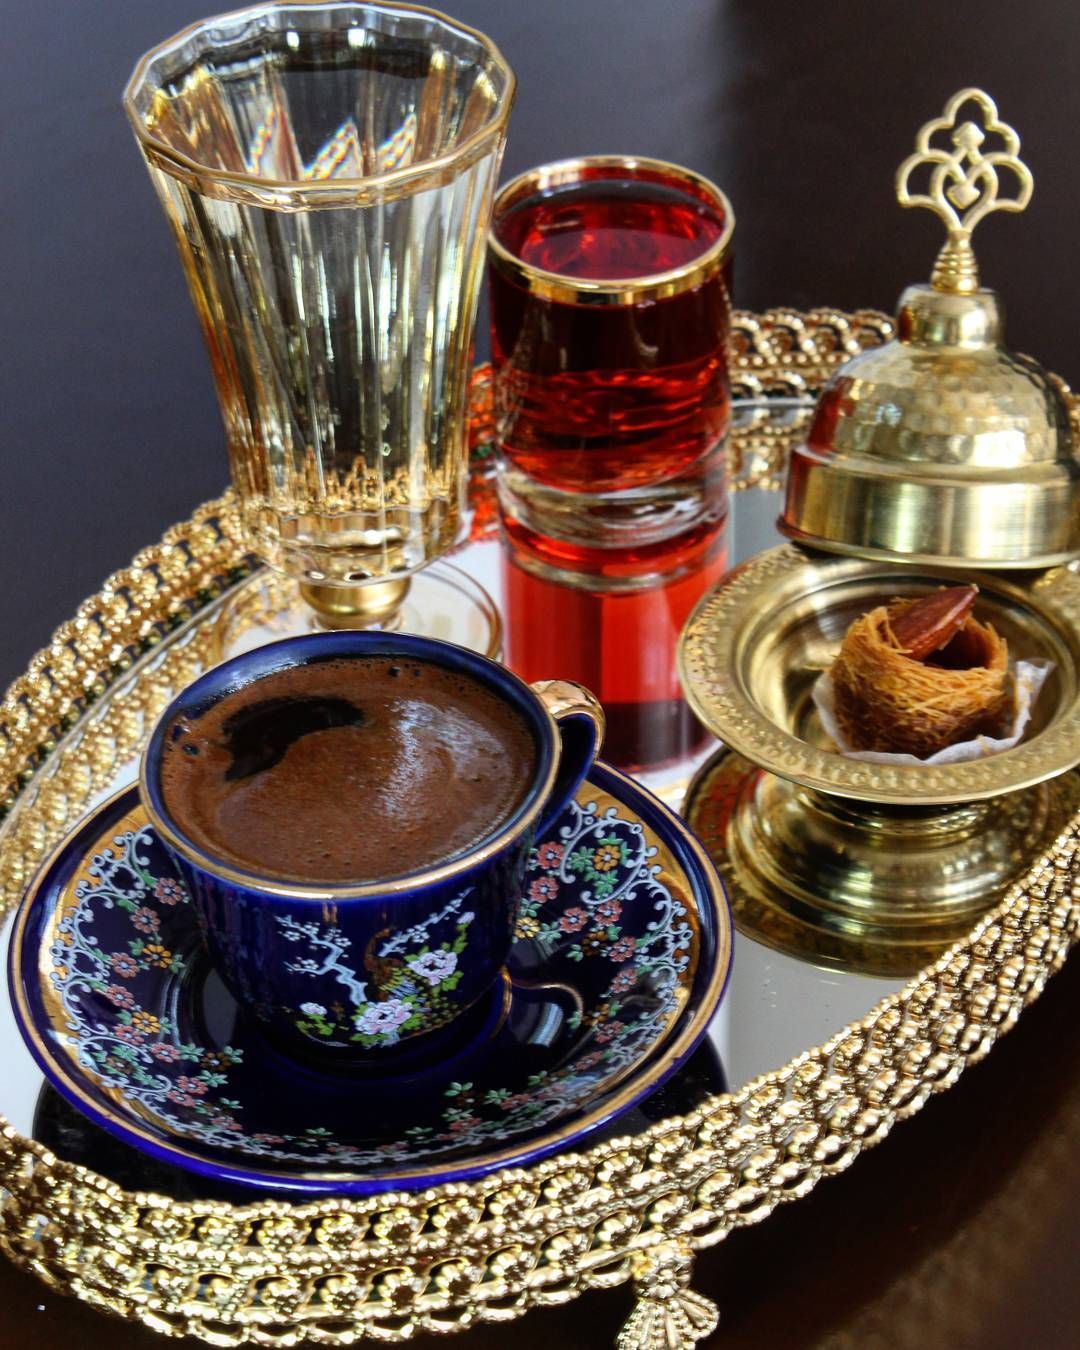 Турецкий кофе и сладости